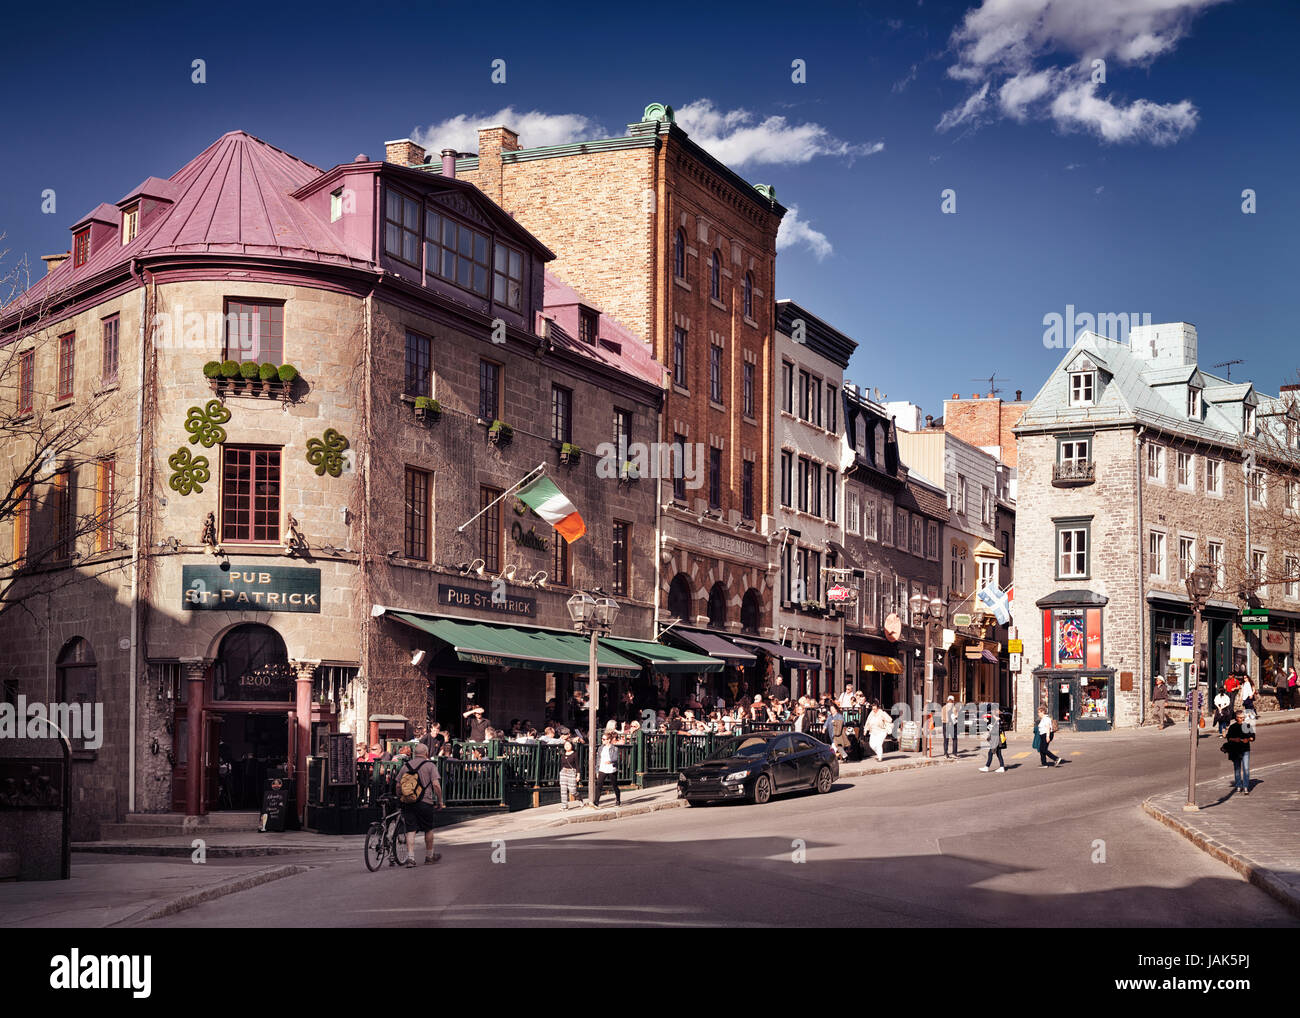 Lizenz erhältlich bei MaximImages.com schöne historische Straßenarchitektur, französische Häuser in Old Town, Quebec City, Kanada Stockfoto